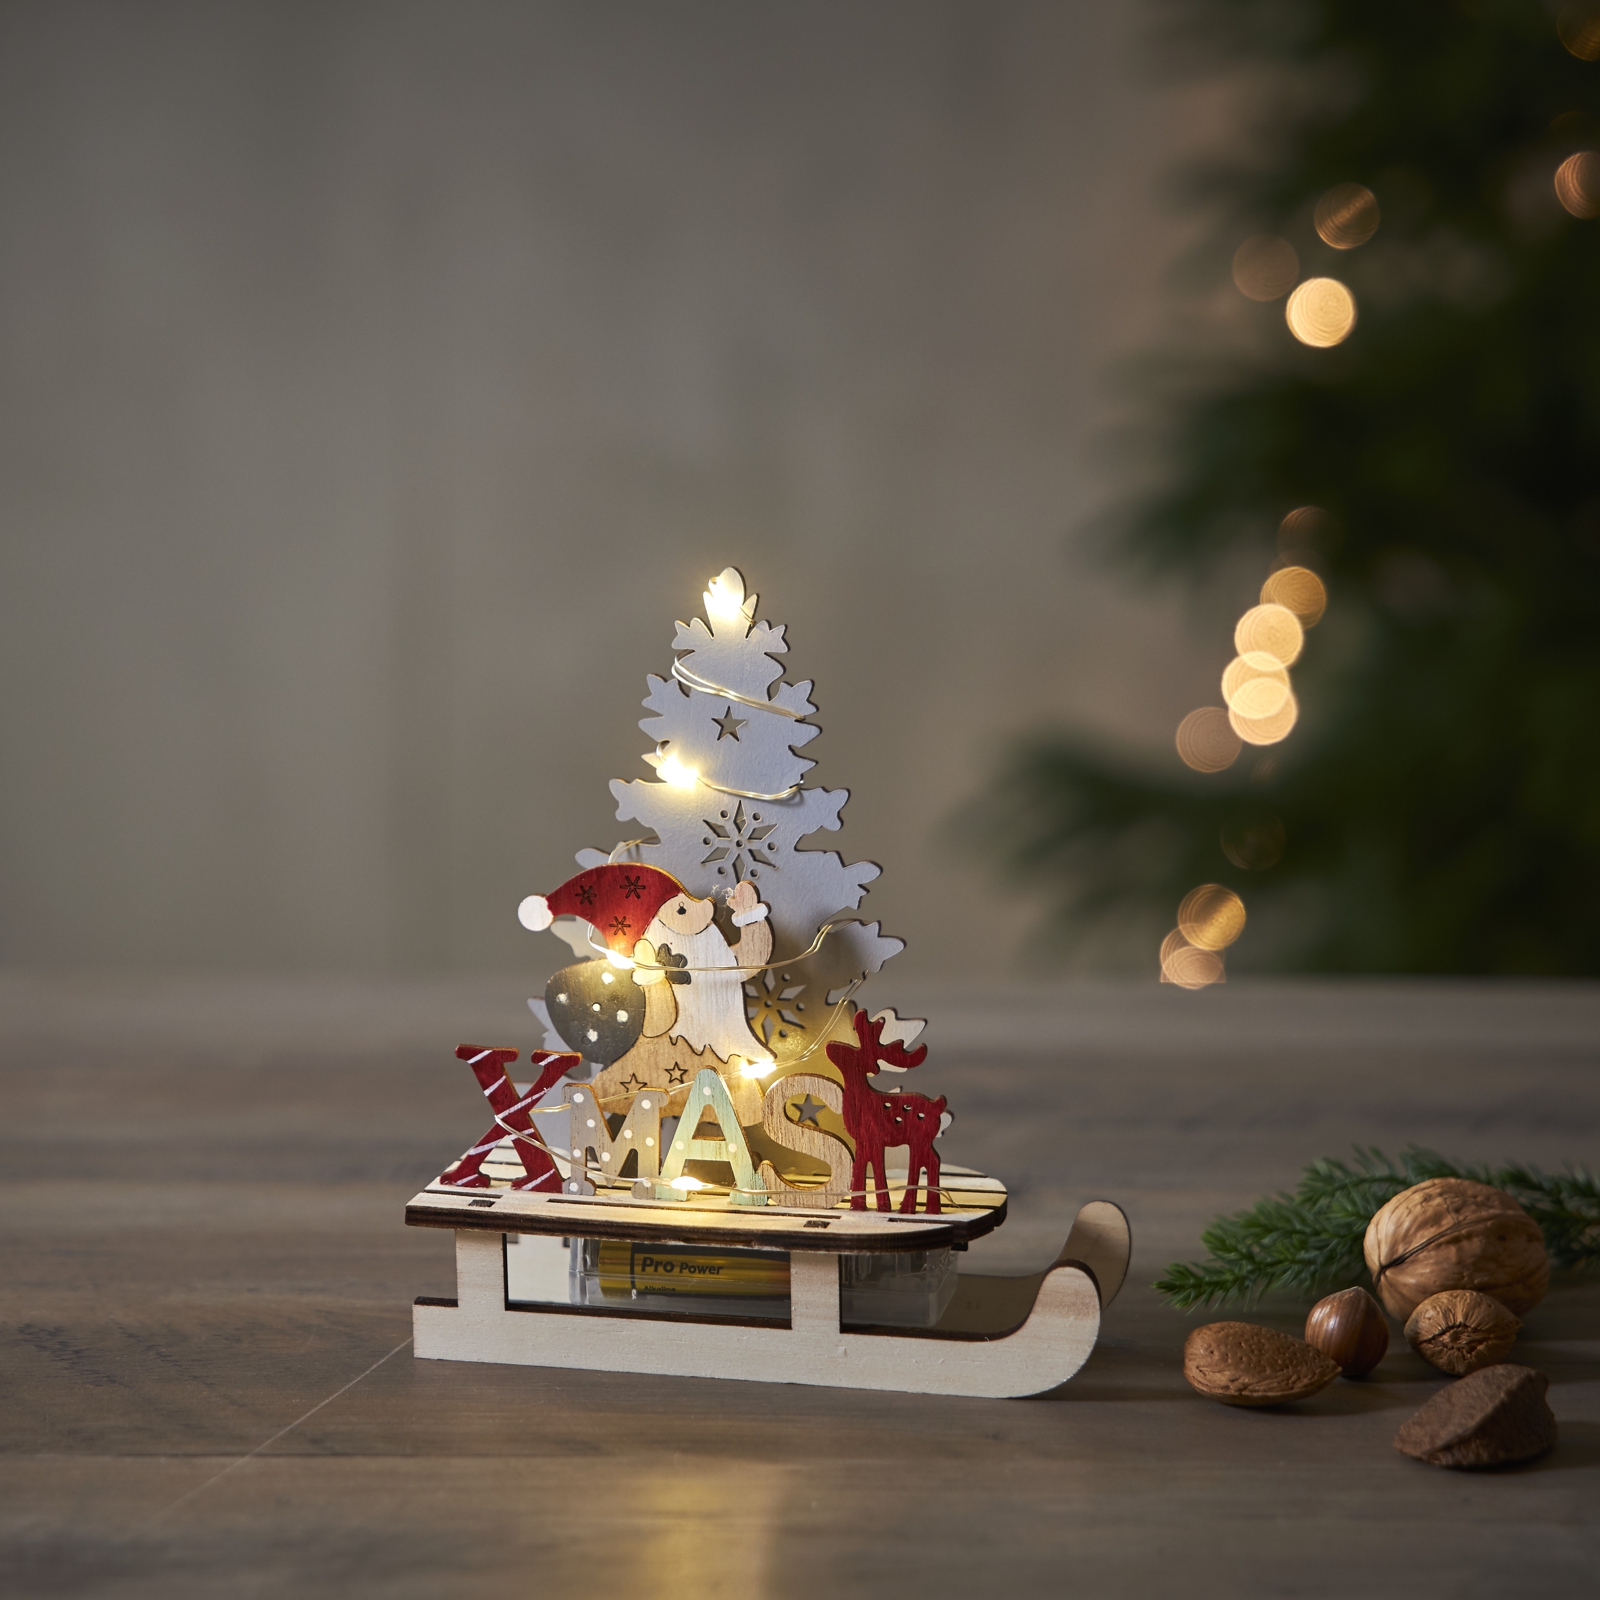 Led Holz-Silhouette Santa auf Schlitten 16x14cm mit batterie-betrieb Weihnachtsdeko beleuchtet Timer